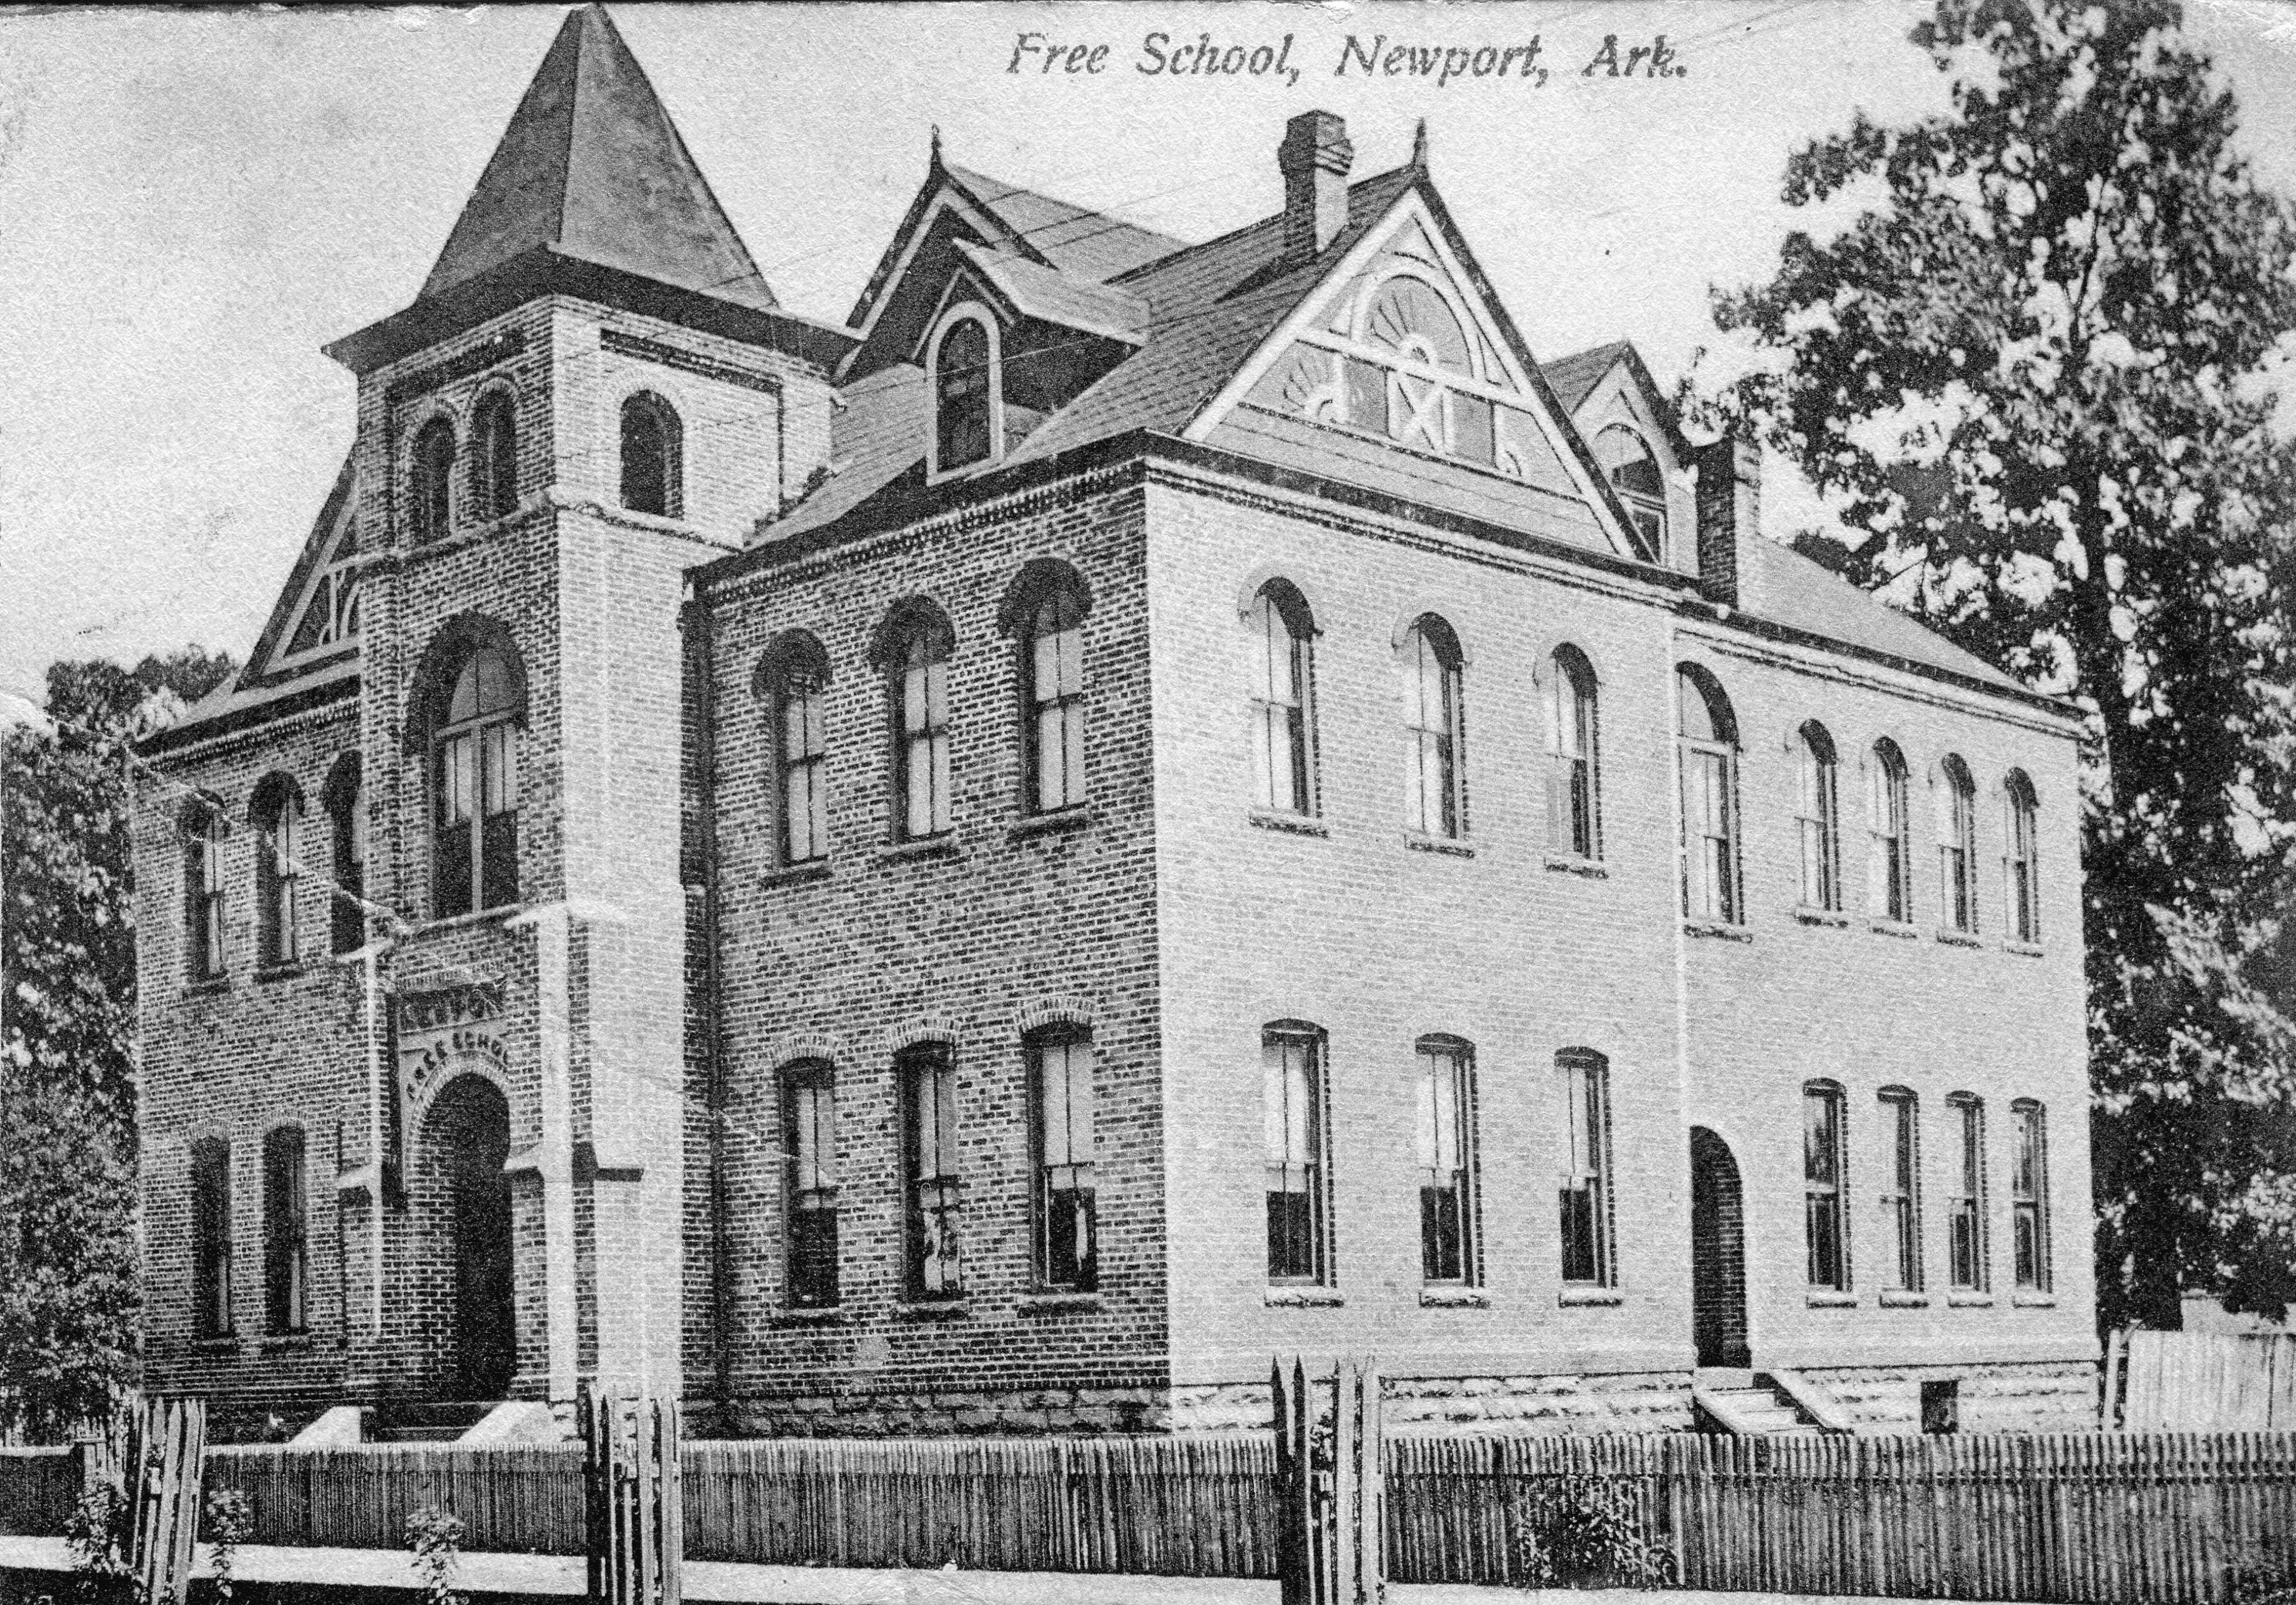 1900’s – Newport Free School